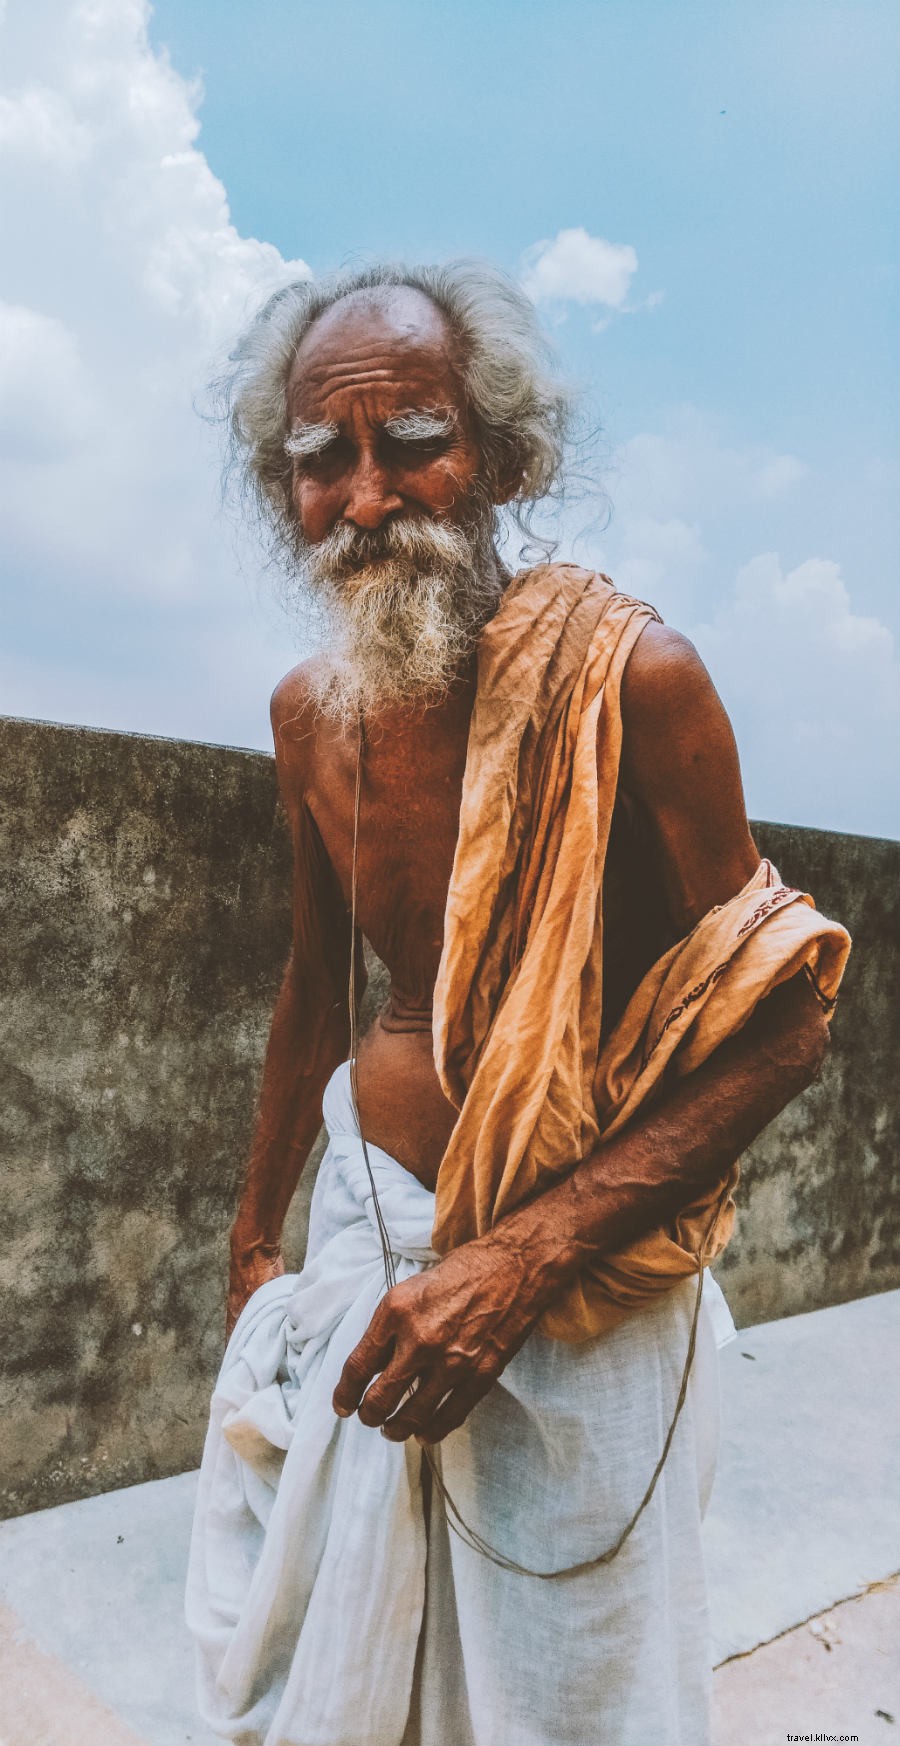 Indo fundo na Índia:uma jornada de fotógrafos 